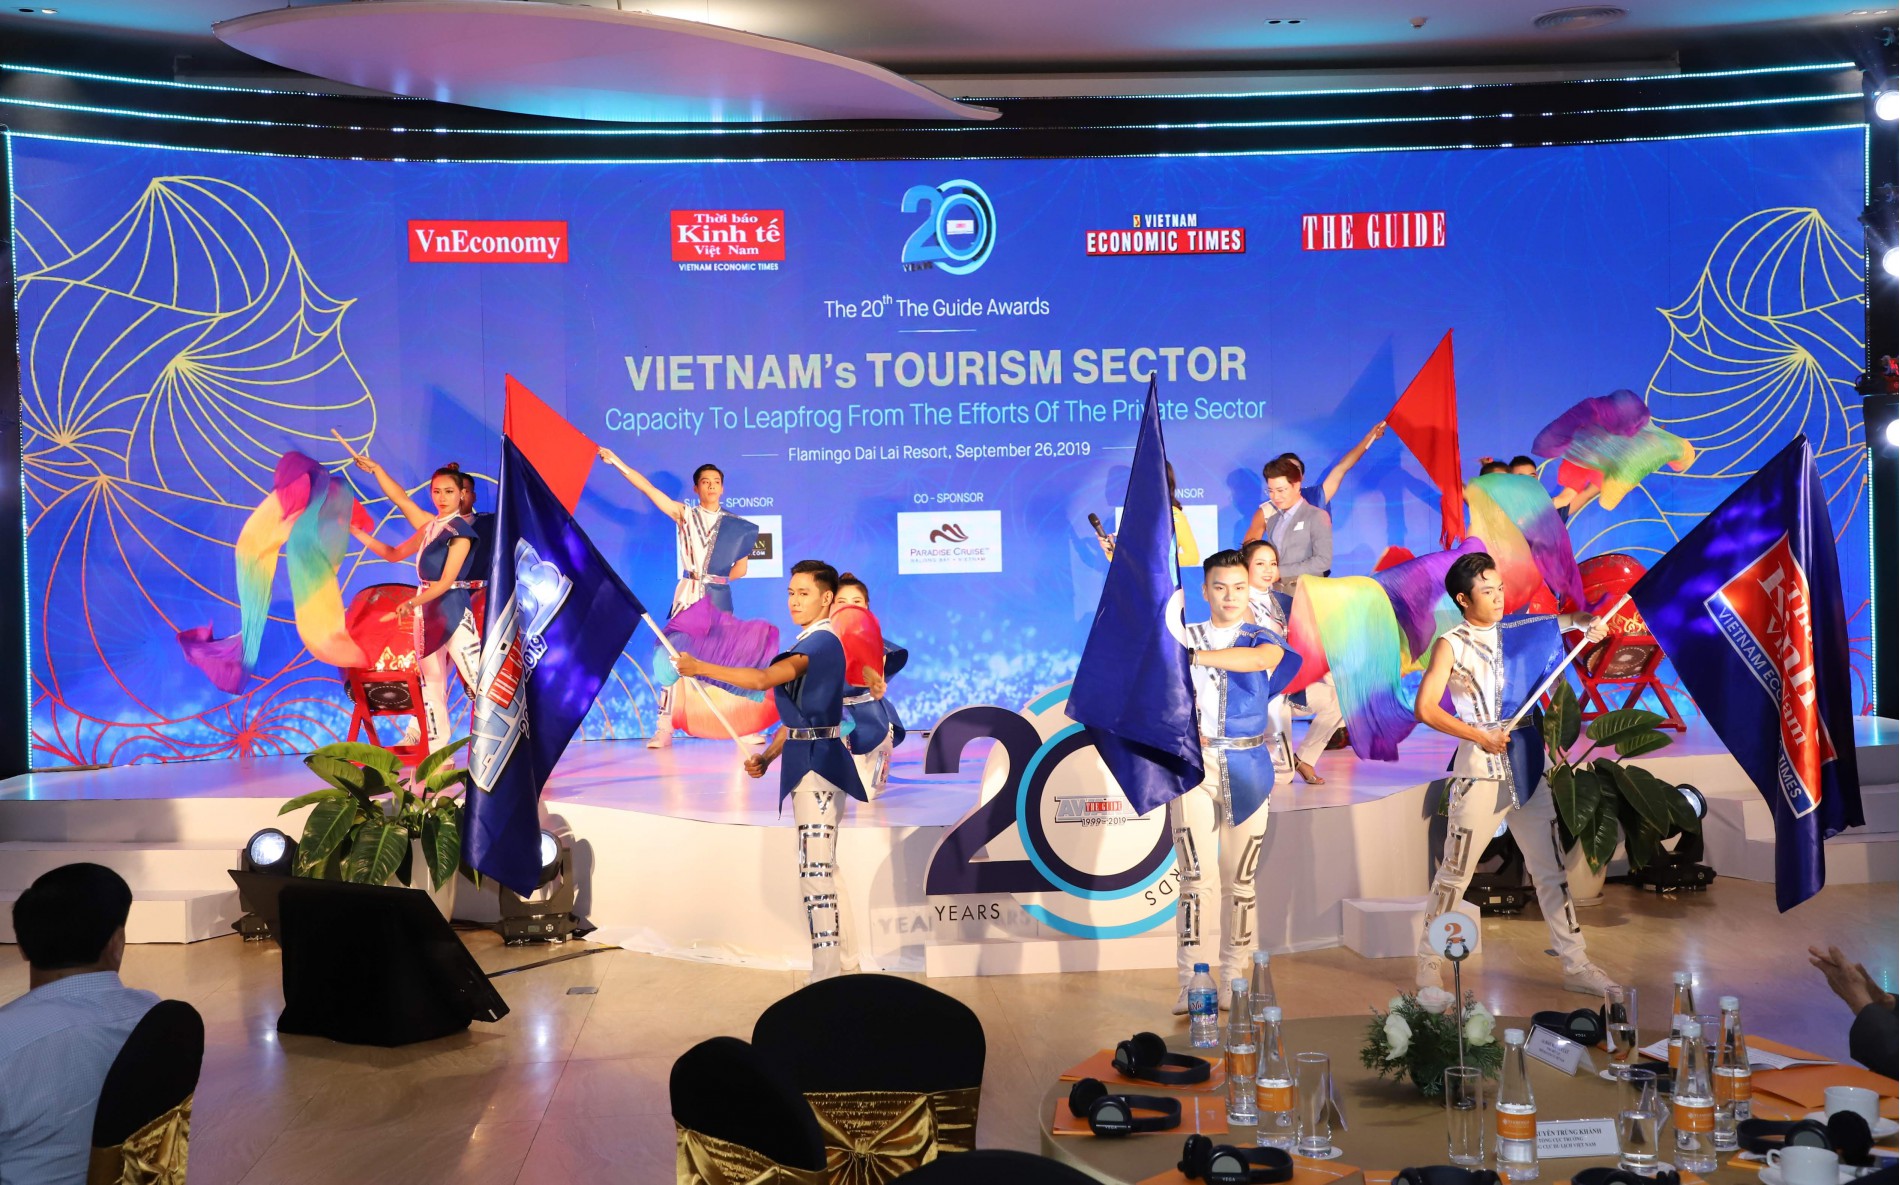  Liên hoan các Doanh nghiệp du lịch Việt Nam - The Guide Awards 2019